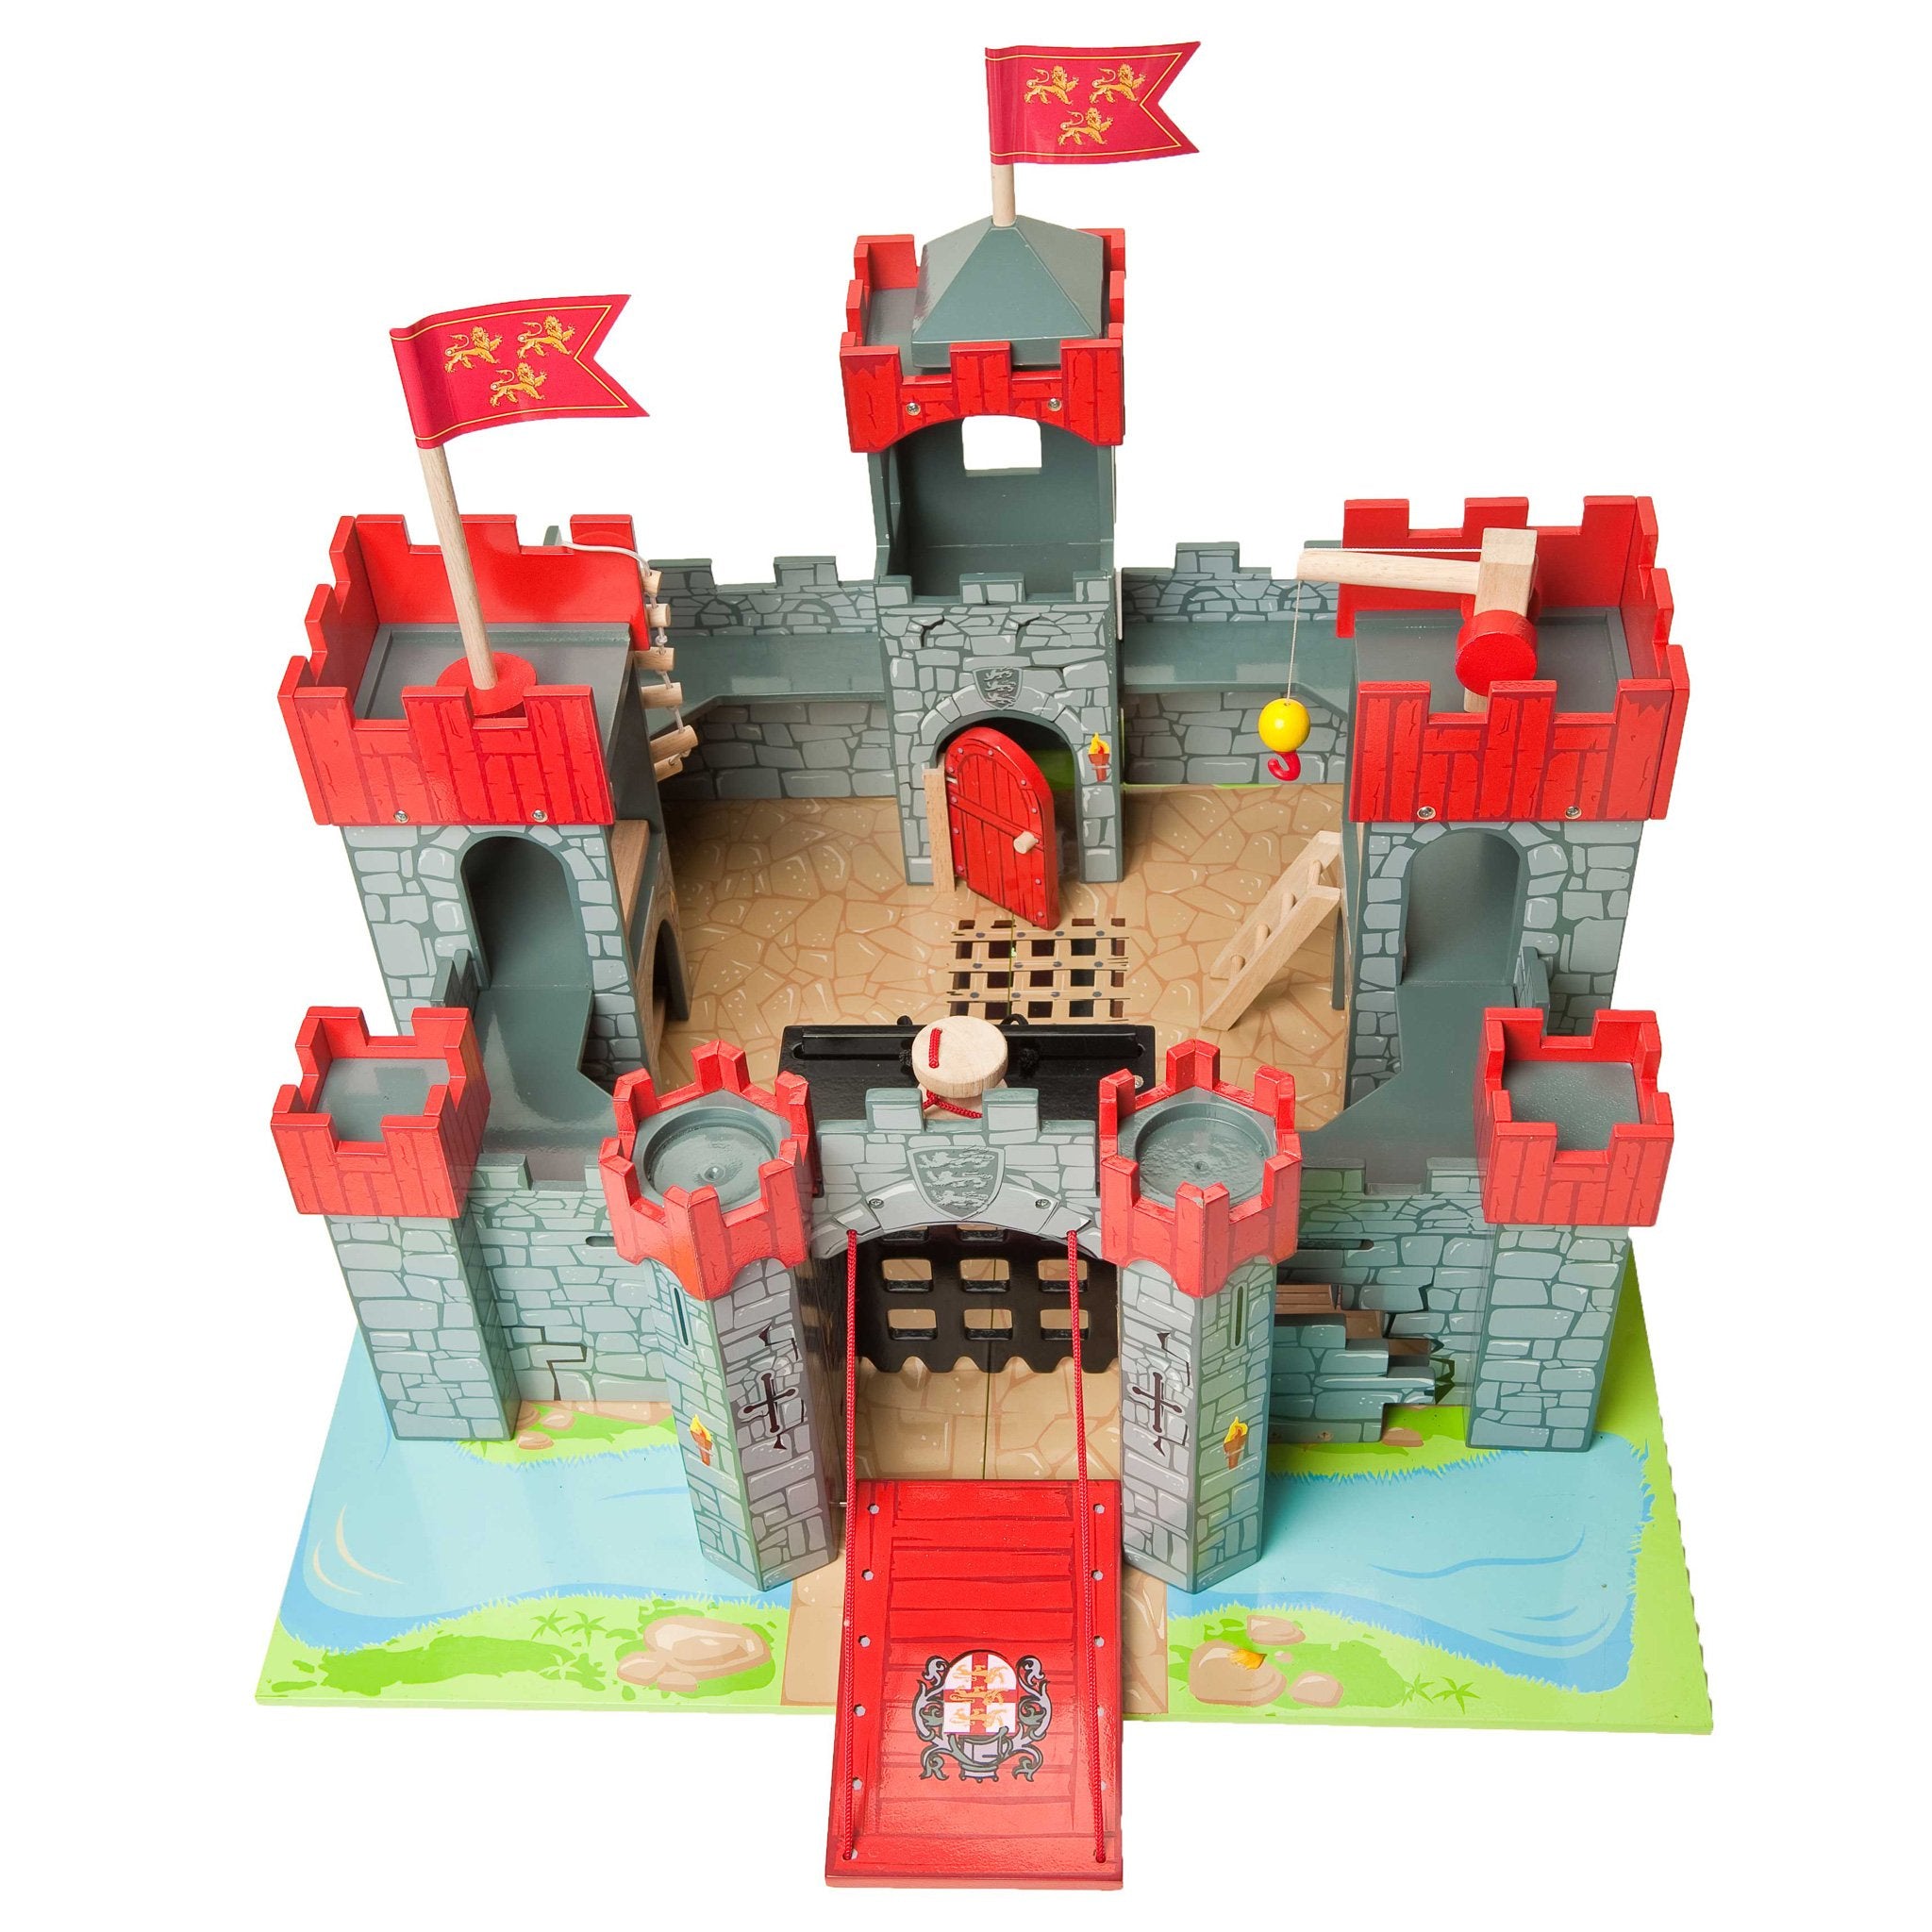 le toy van wooden castle